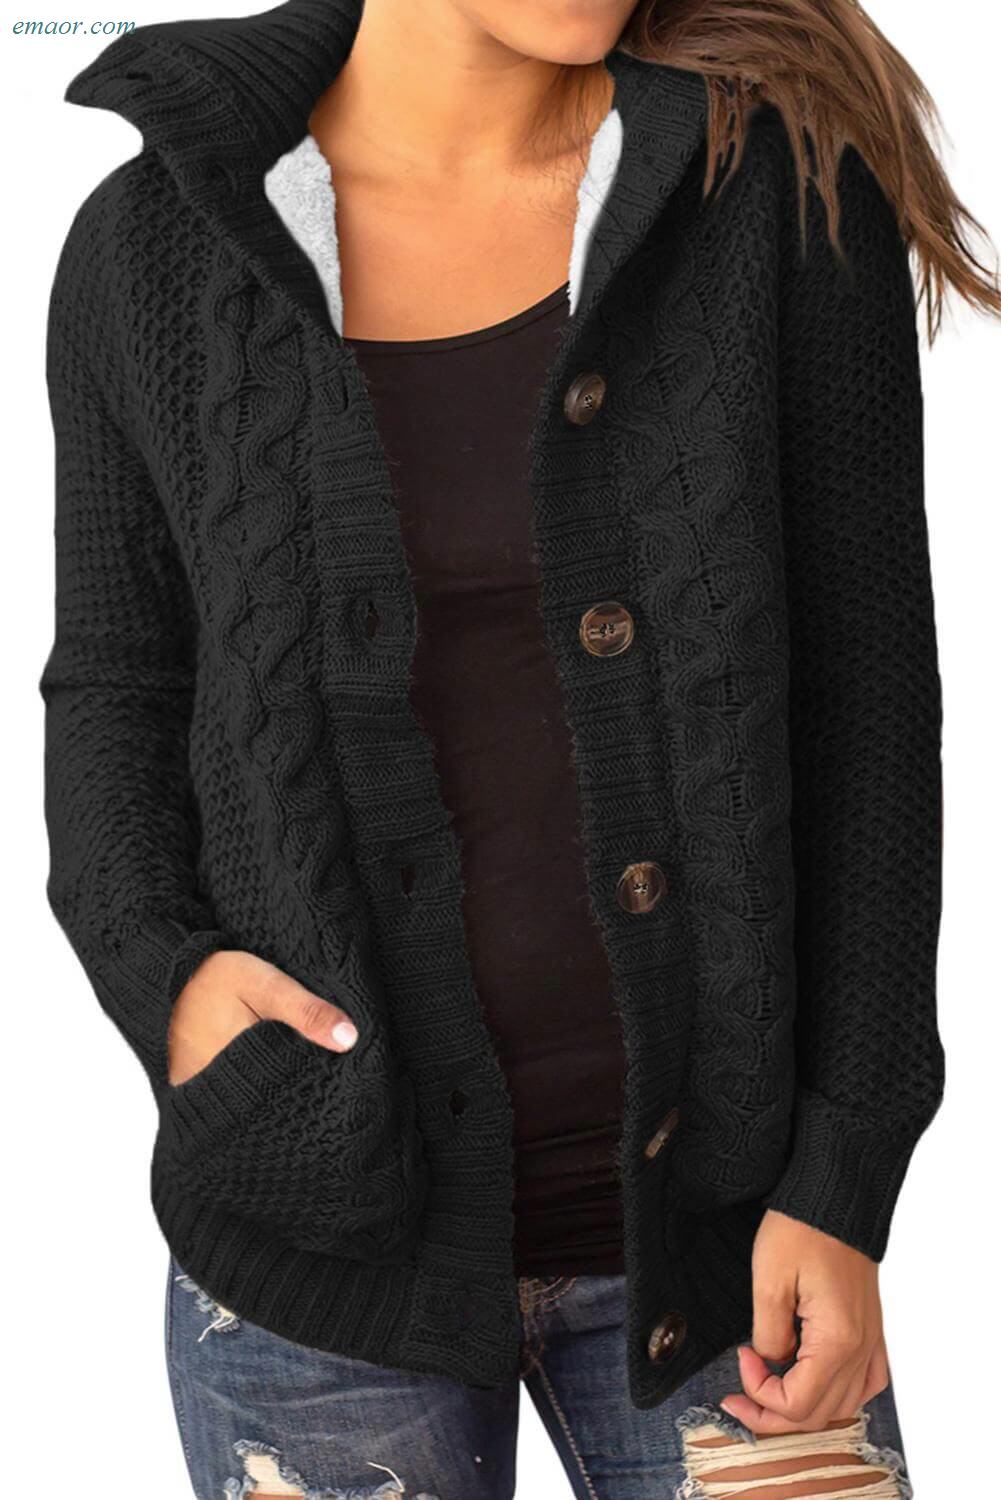 Women's Winter Vests Outerwear Fur Hood Knit Sweater Ellen Tracy ...